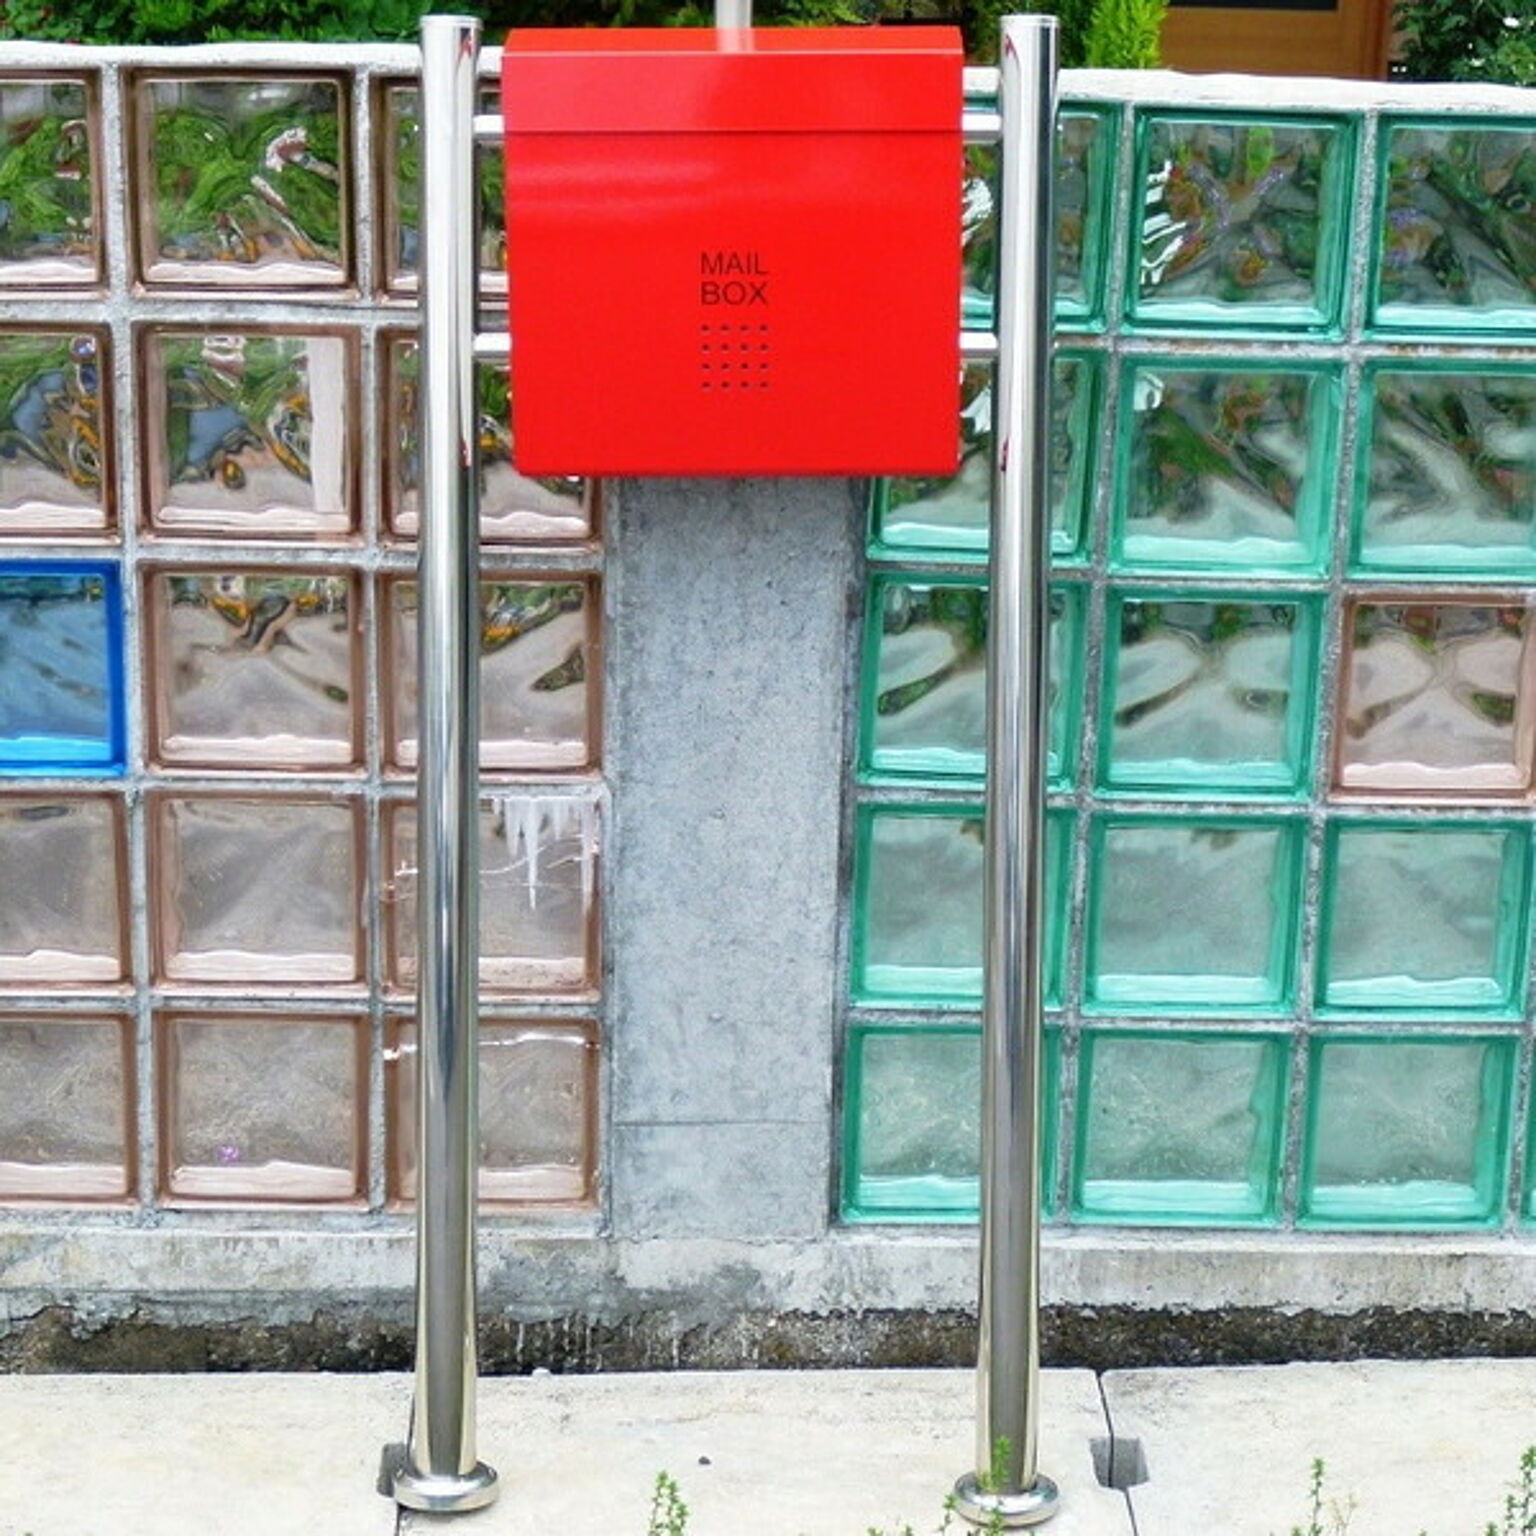 郵便ポスト郵便受けメールボックス大型メール便スタンドタイプ型マグネット付きレッド赤色ポスト(red)